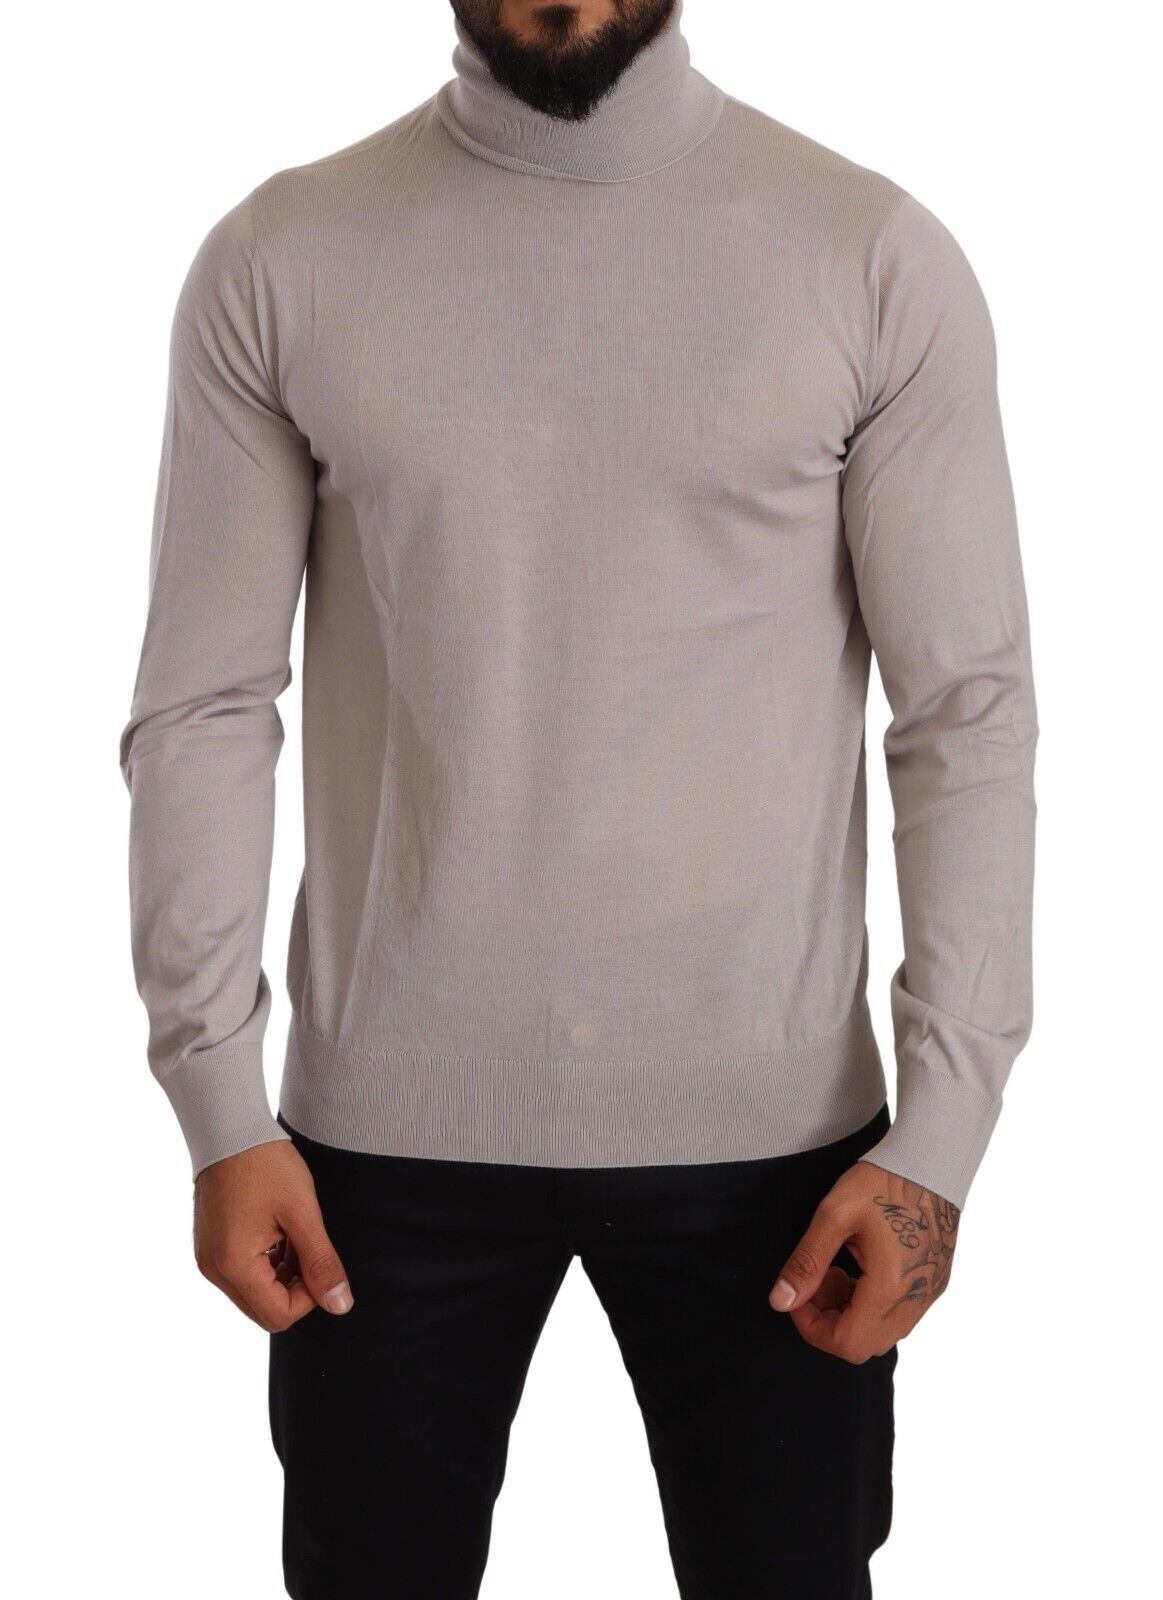 DOLCE & GABBANA Свитер Серый кашемировый пуловер с воротником IT50/US40/L Рекомендуемая розничная цена 1100 долларов США